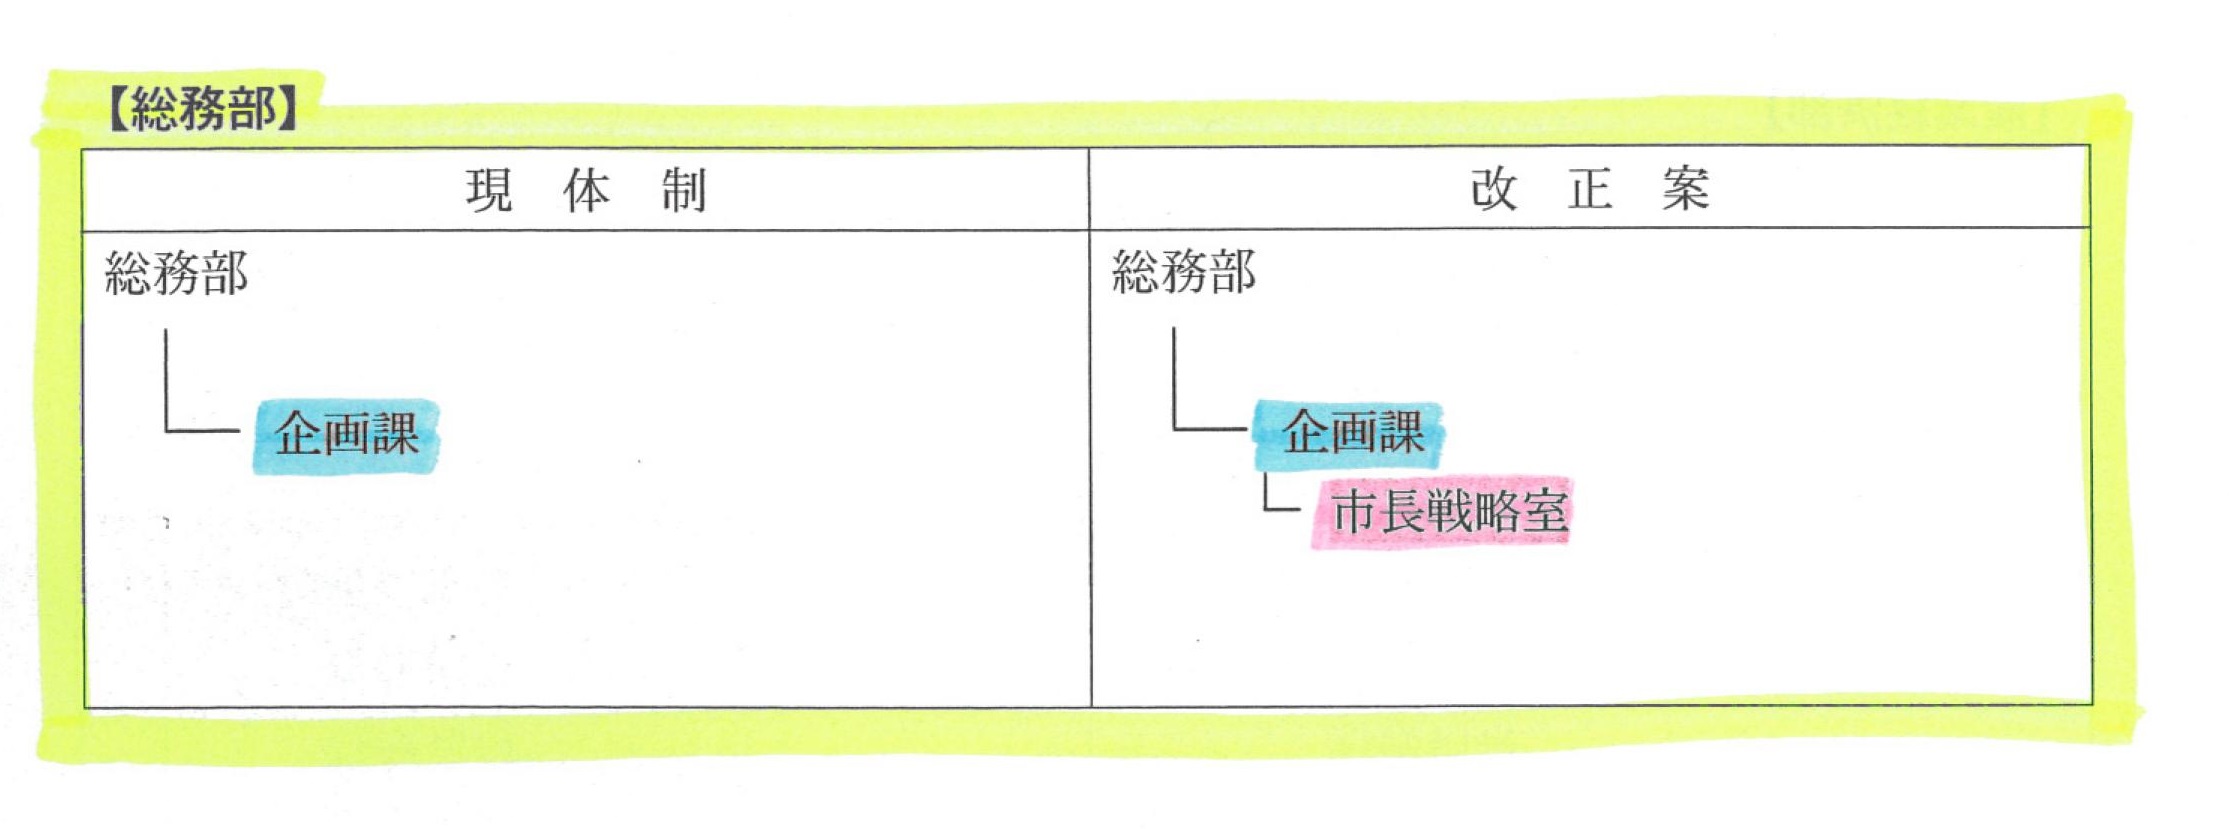 「小長井色」を反映した富士市の26年度組織改正案_f0141310_7161740.jpg